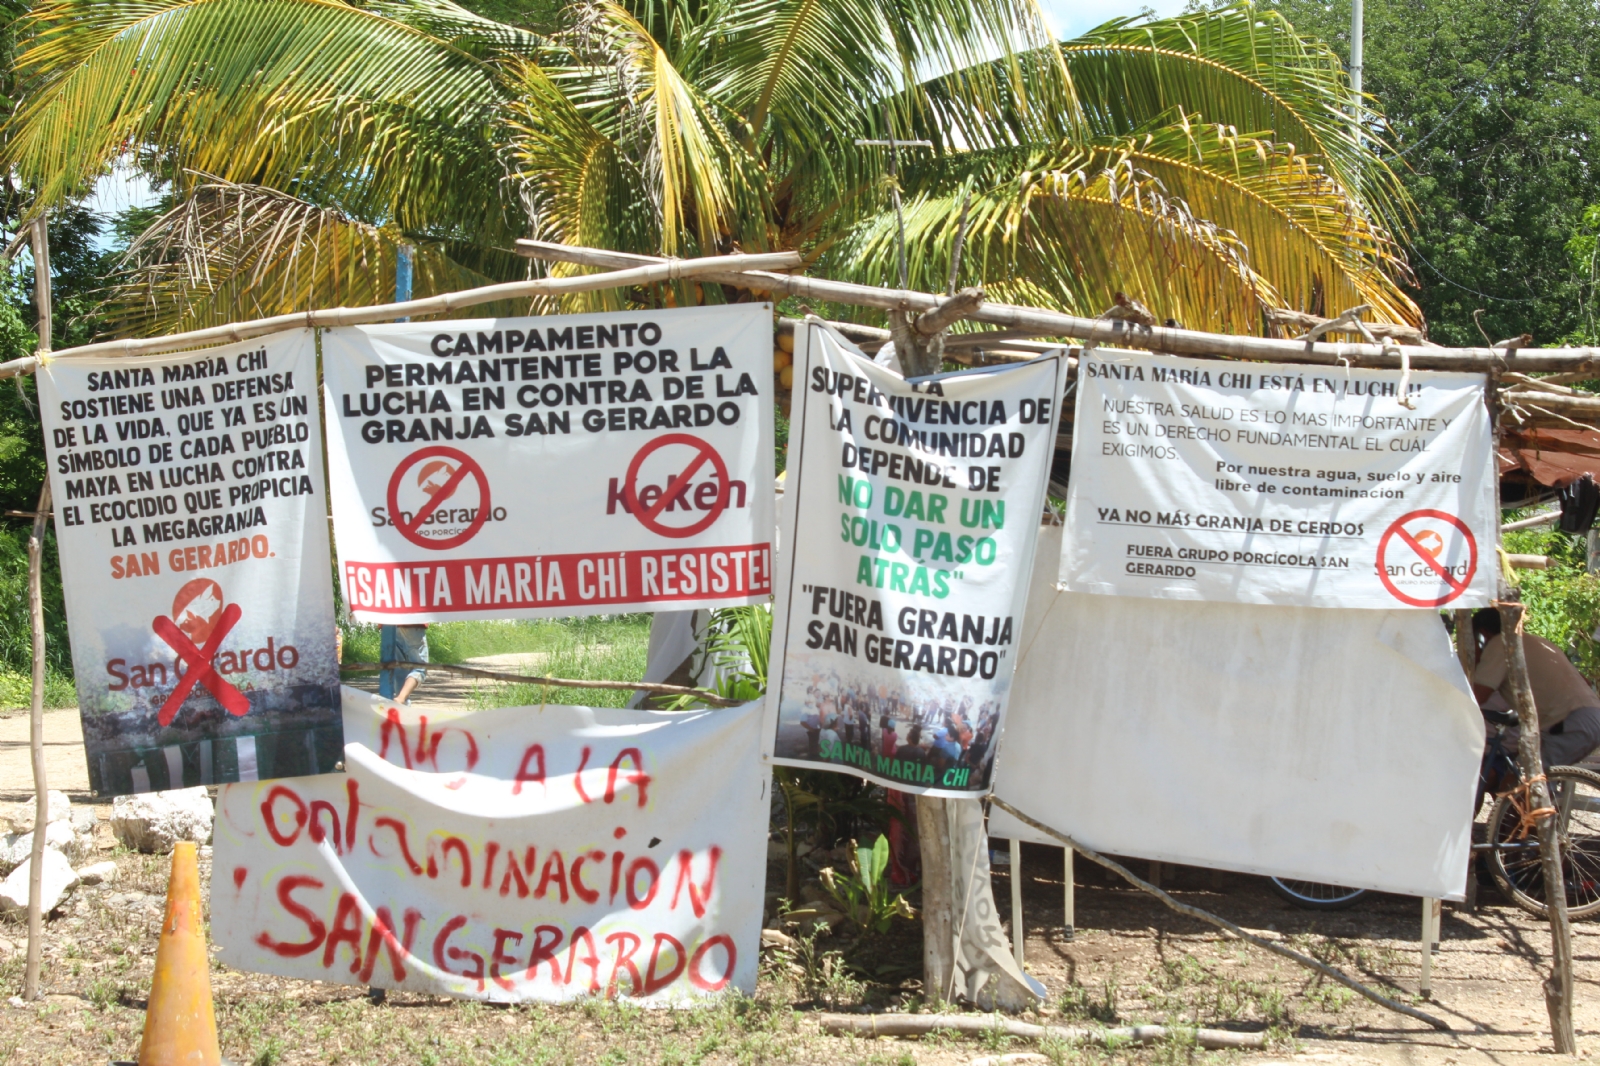 Kekén 'se burla' de la ley; continúa operaciones en la granja clausurada de Santa María Chí en Mérida